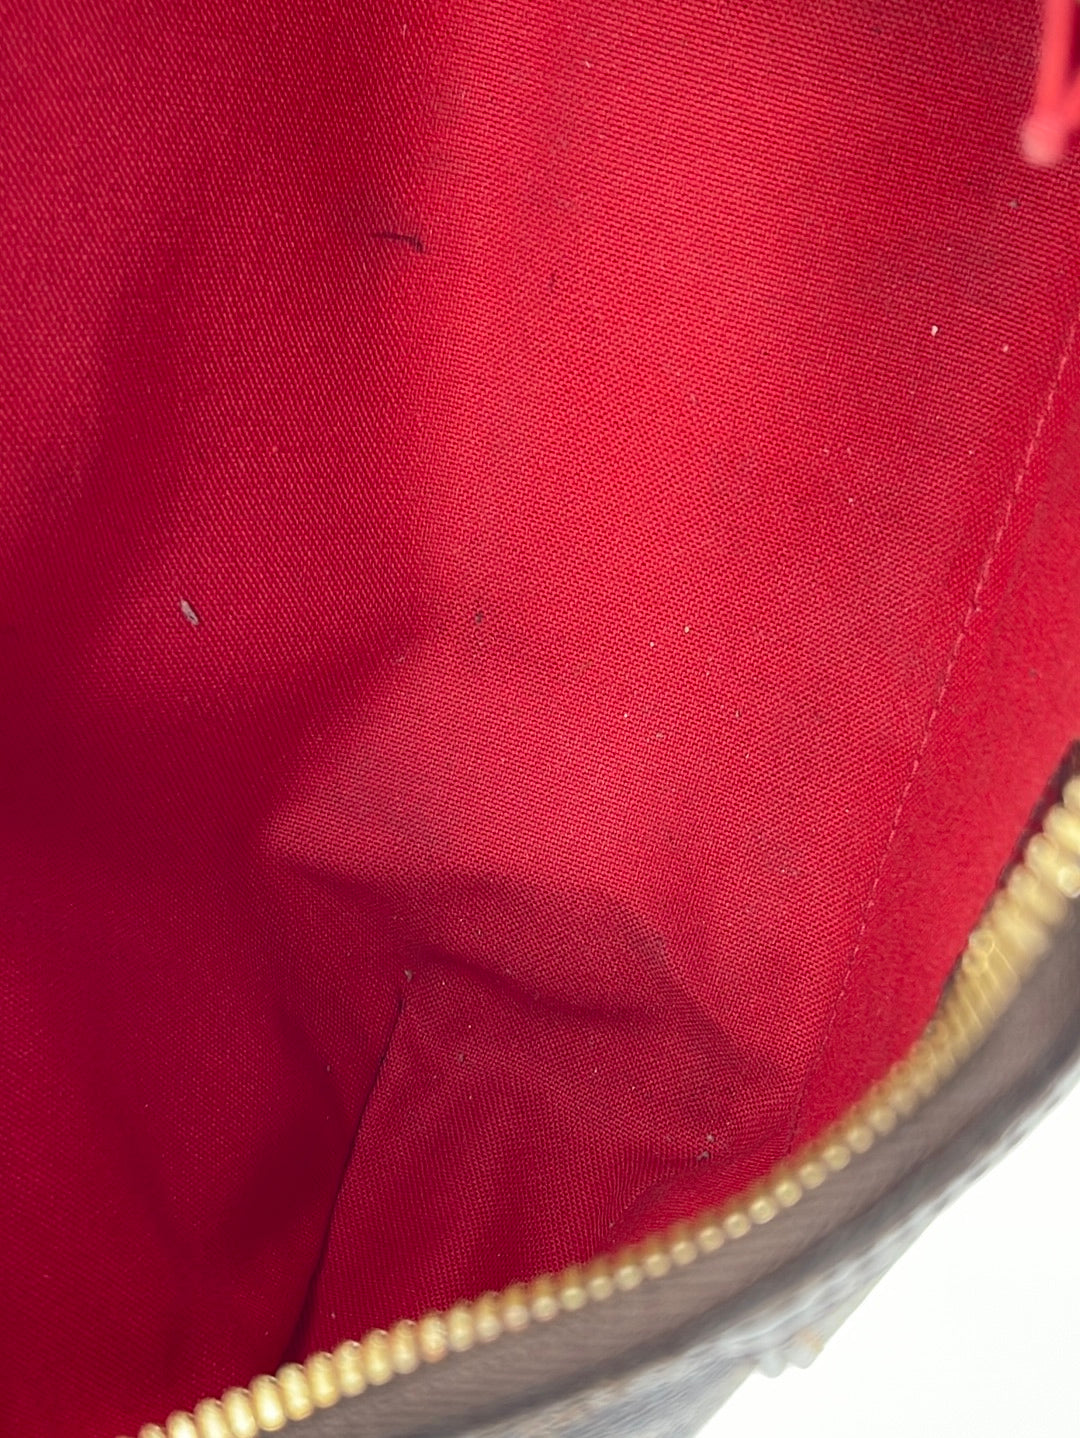 Preloved Louis Vuitton Damier Ebene Thames PM Shoulder Bag AR4078